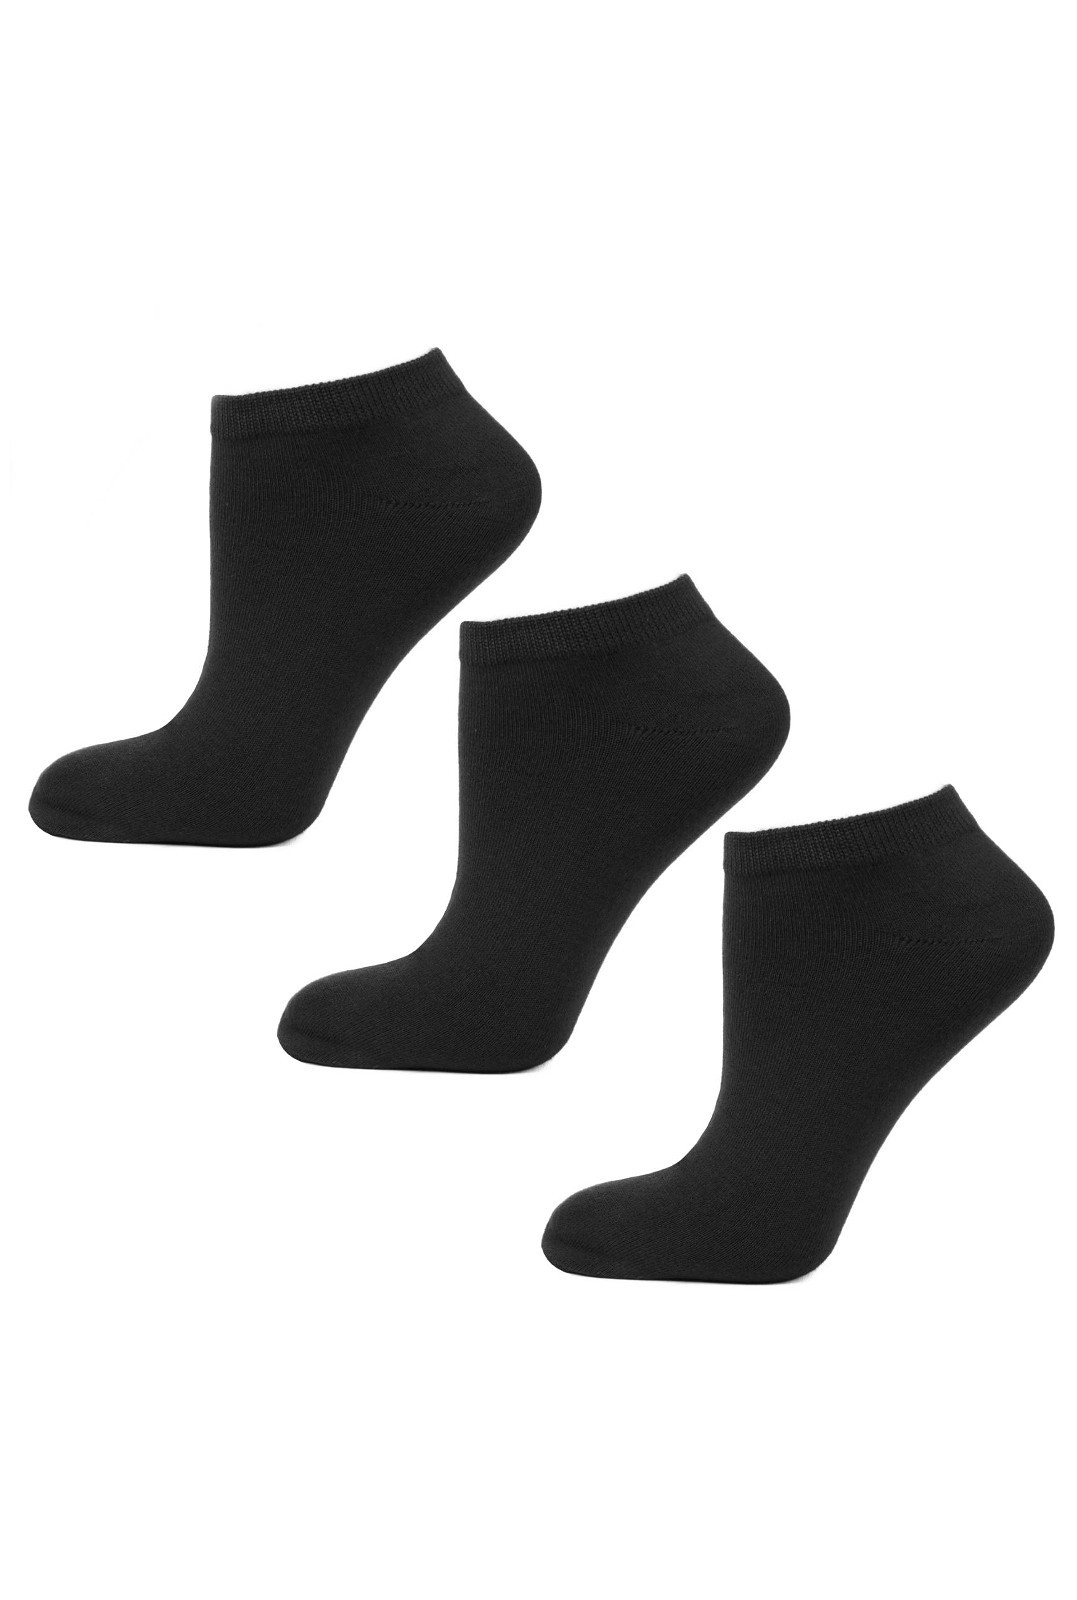 Pánské ponožky Moraj BSK200-03 A'3 43-45 bílá 39-42